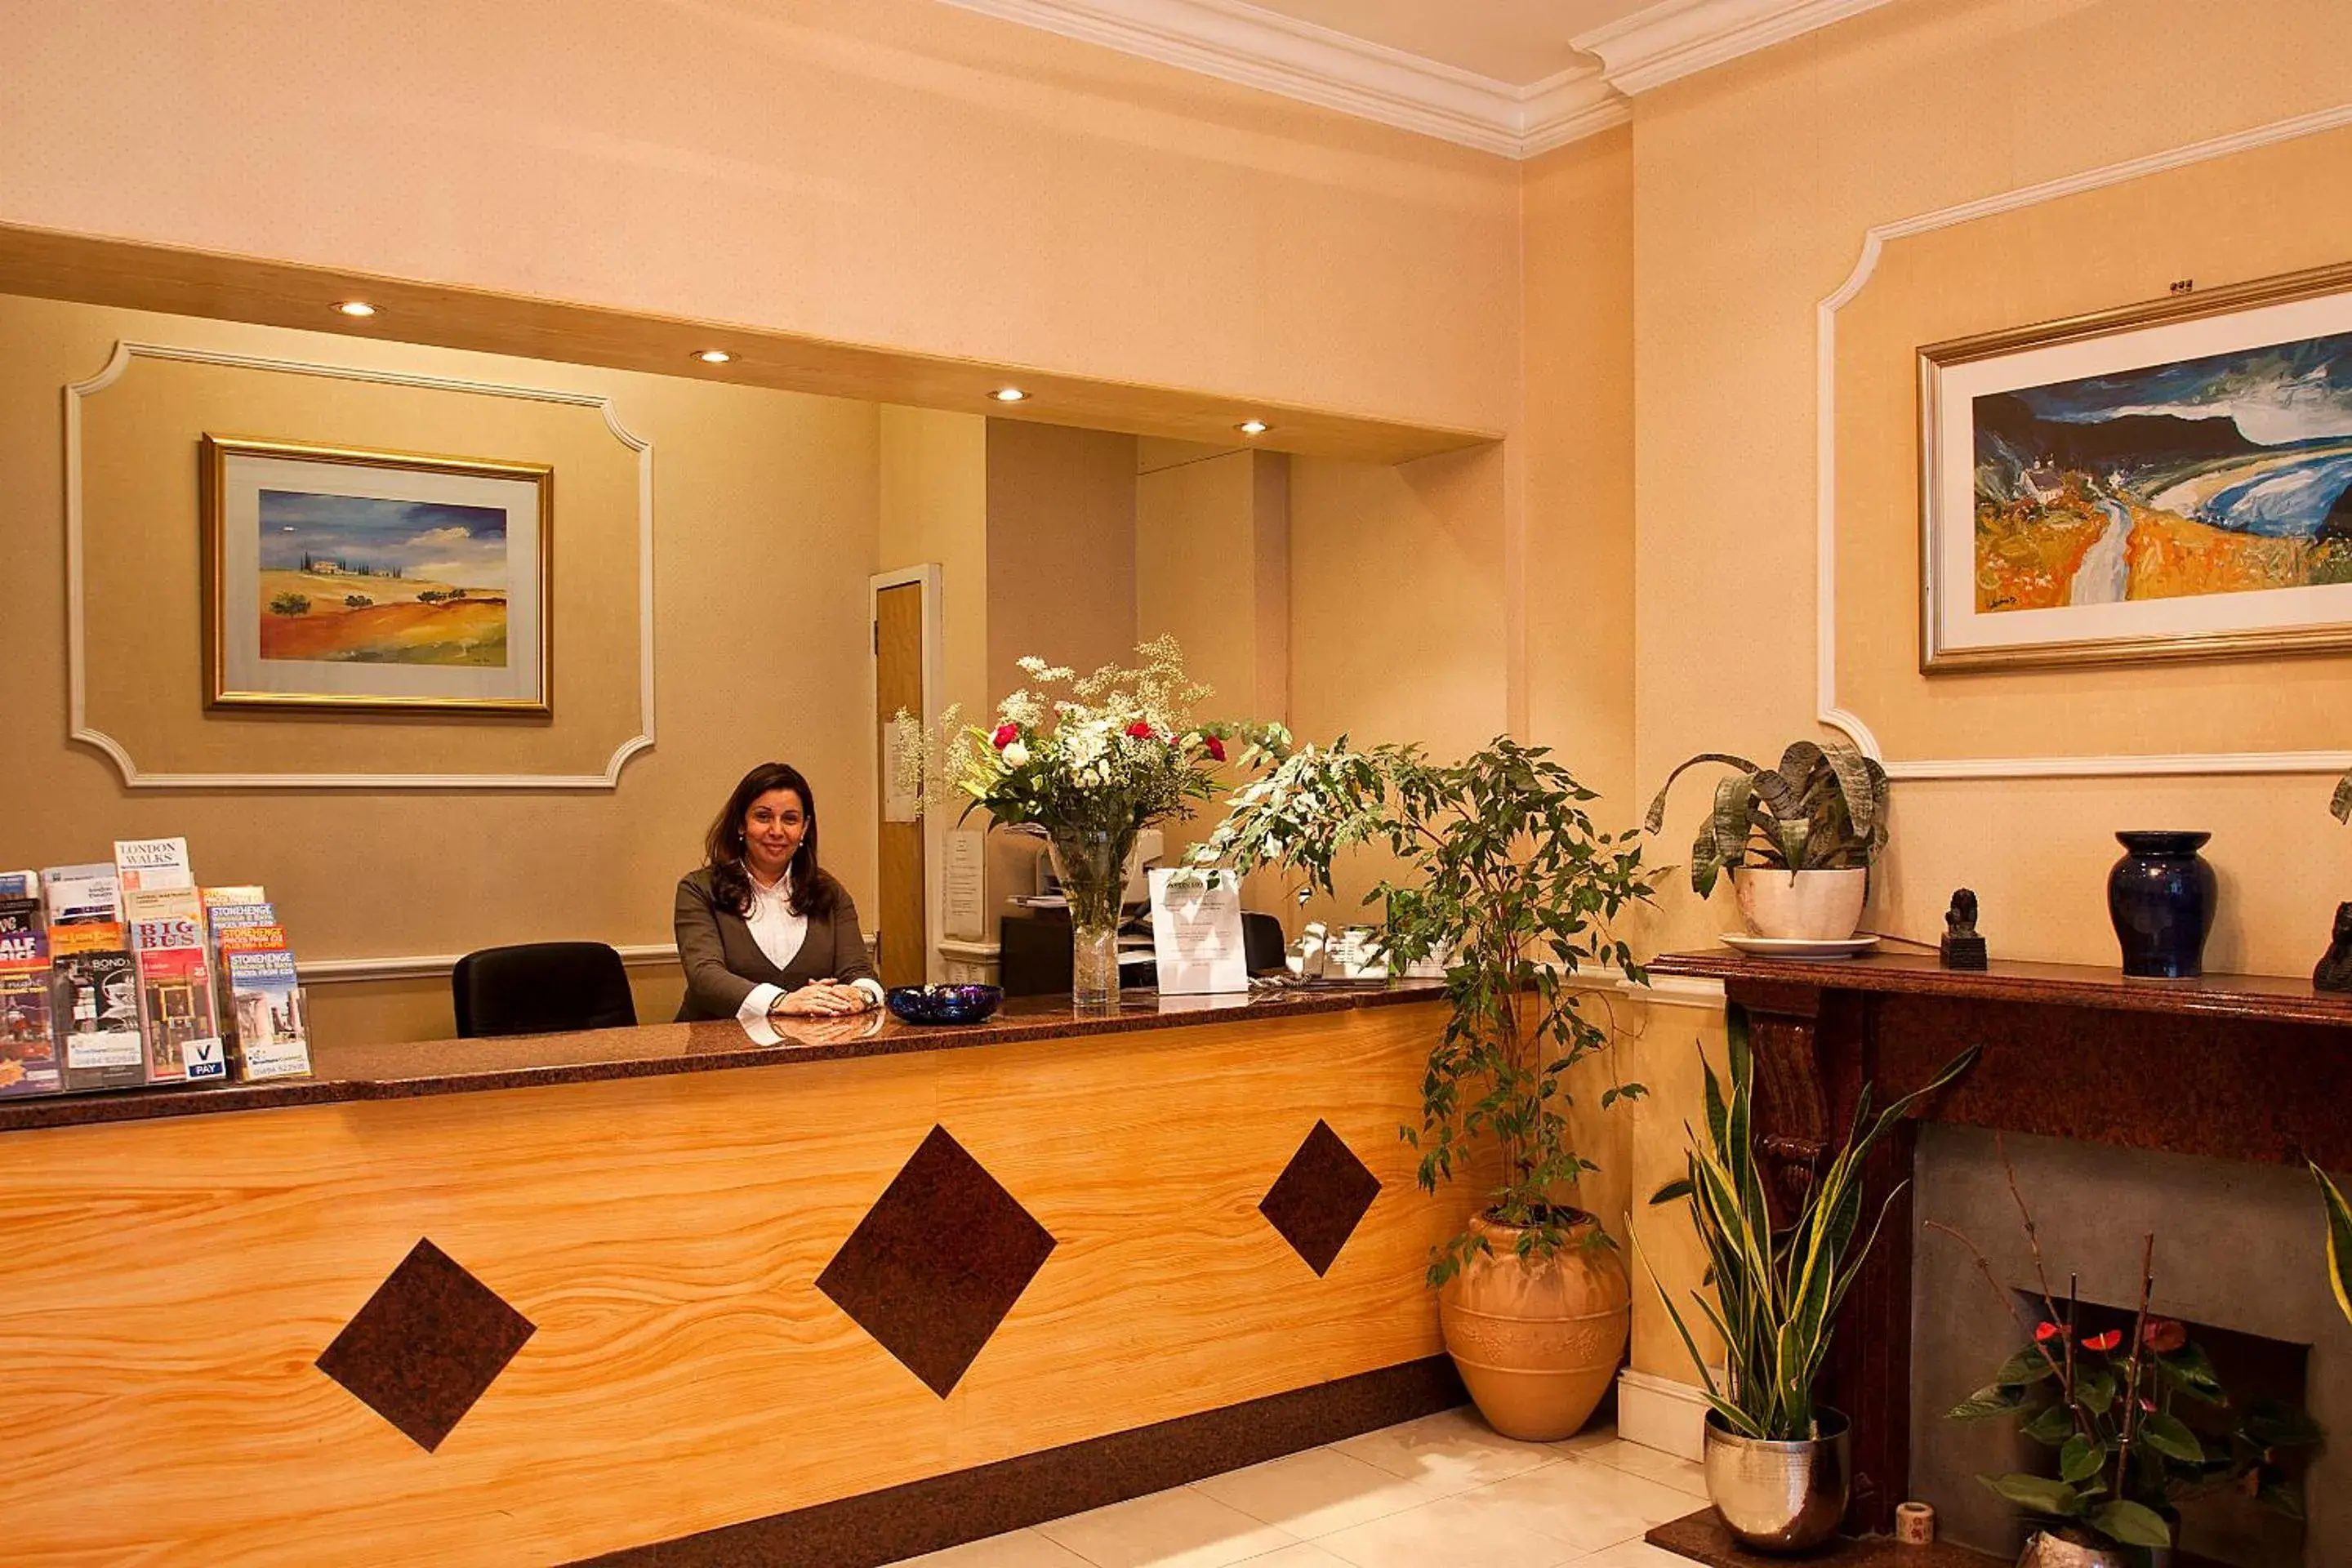 Lobby or reception, Lobby/Reception in Avon Hotel